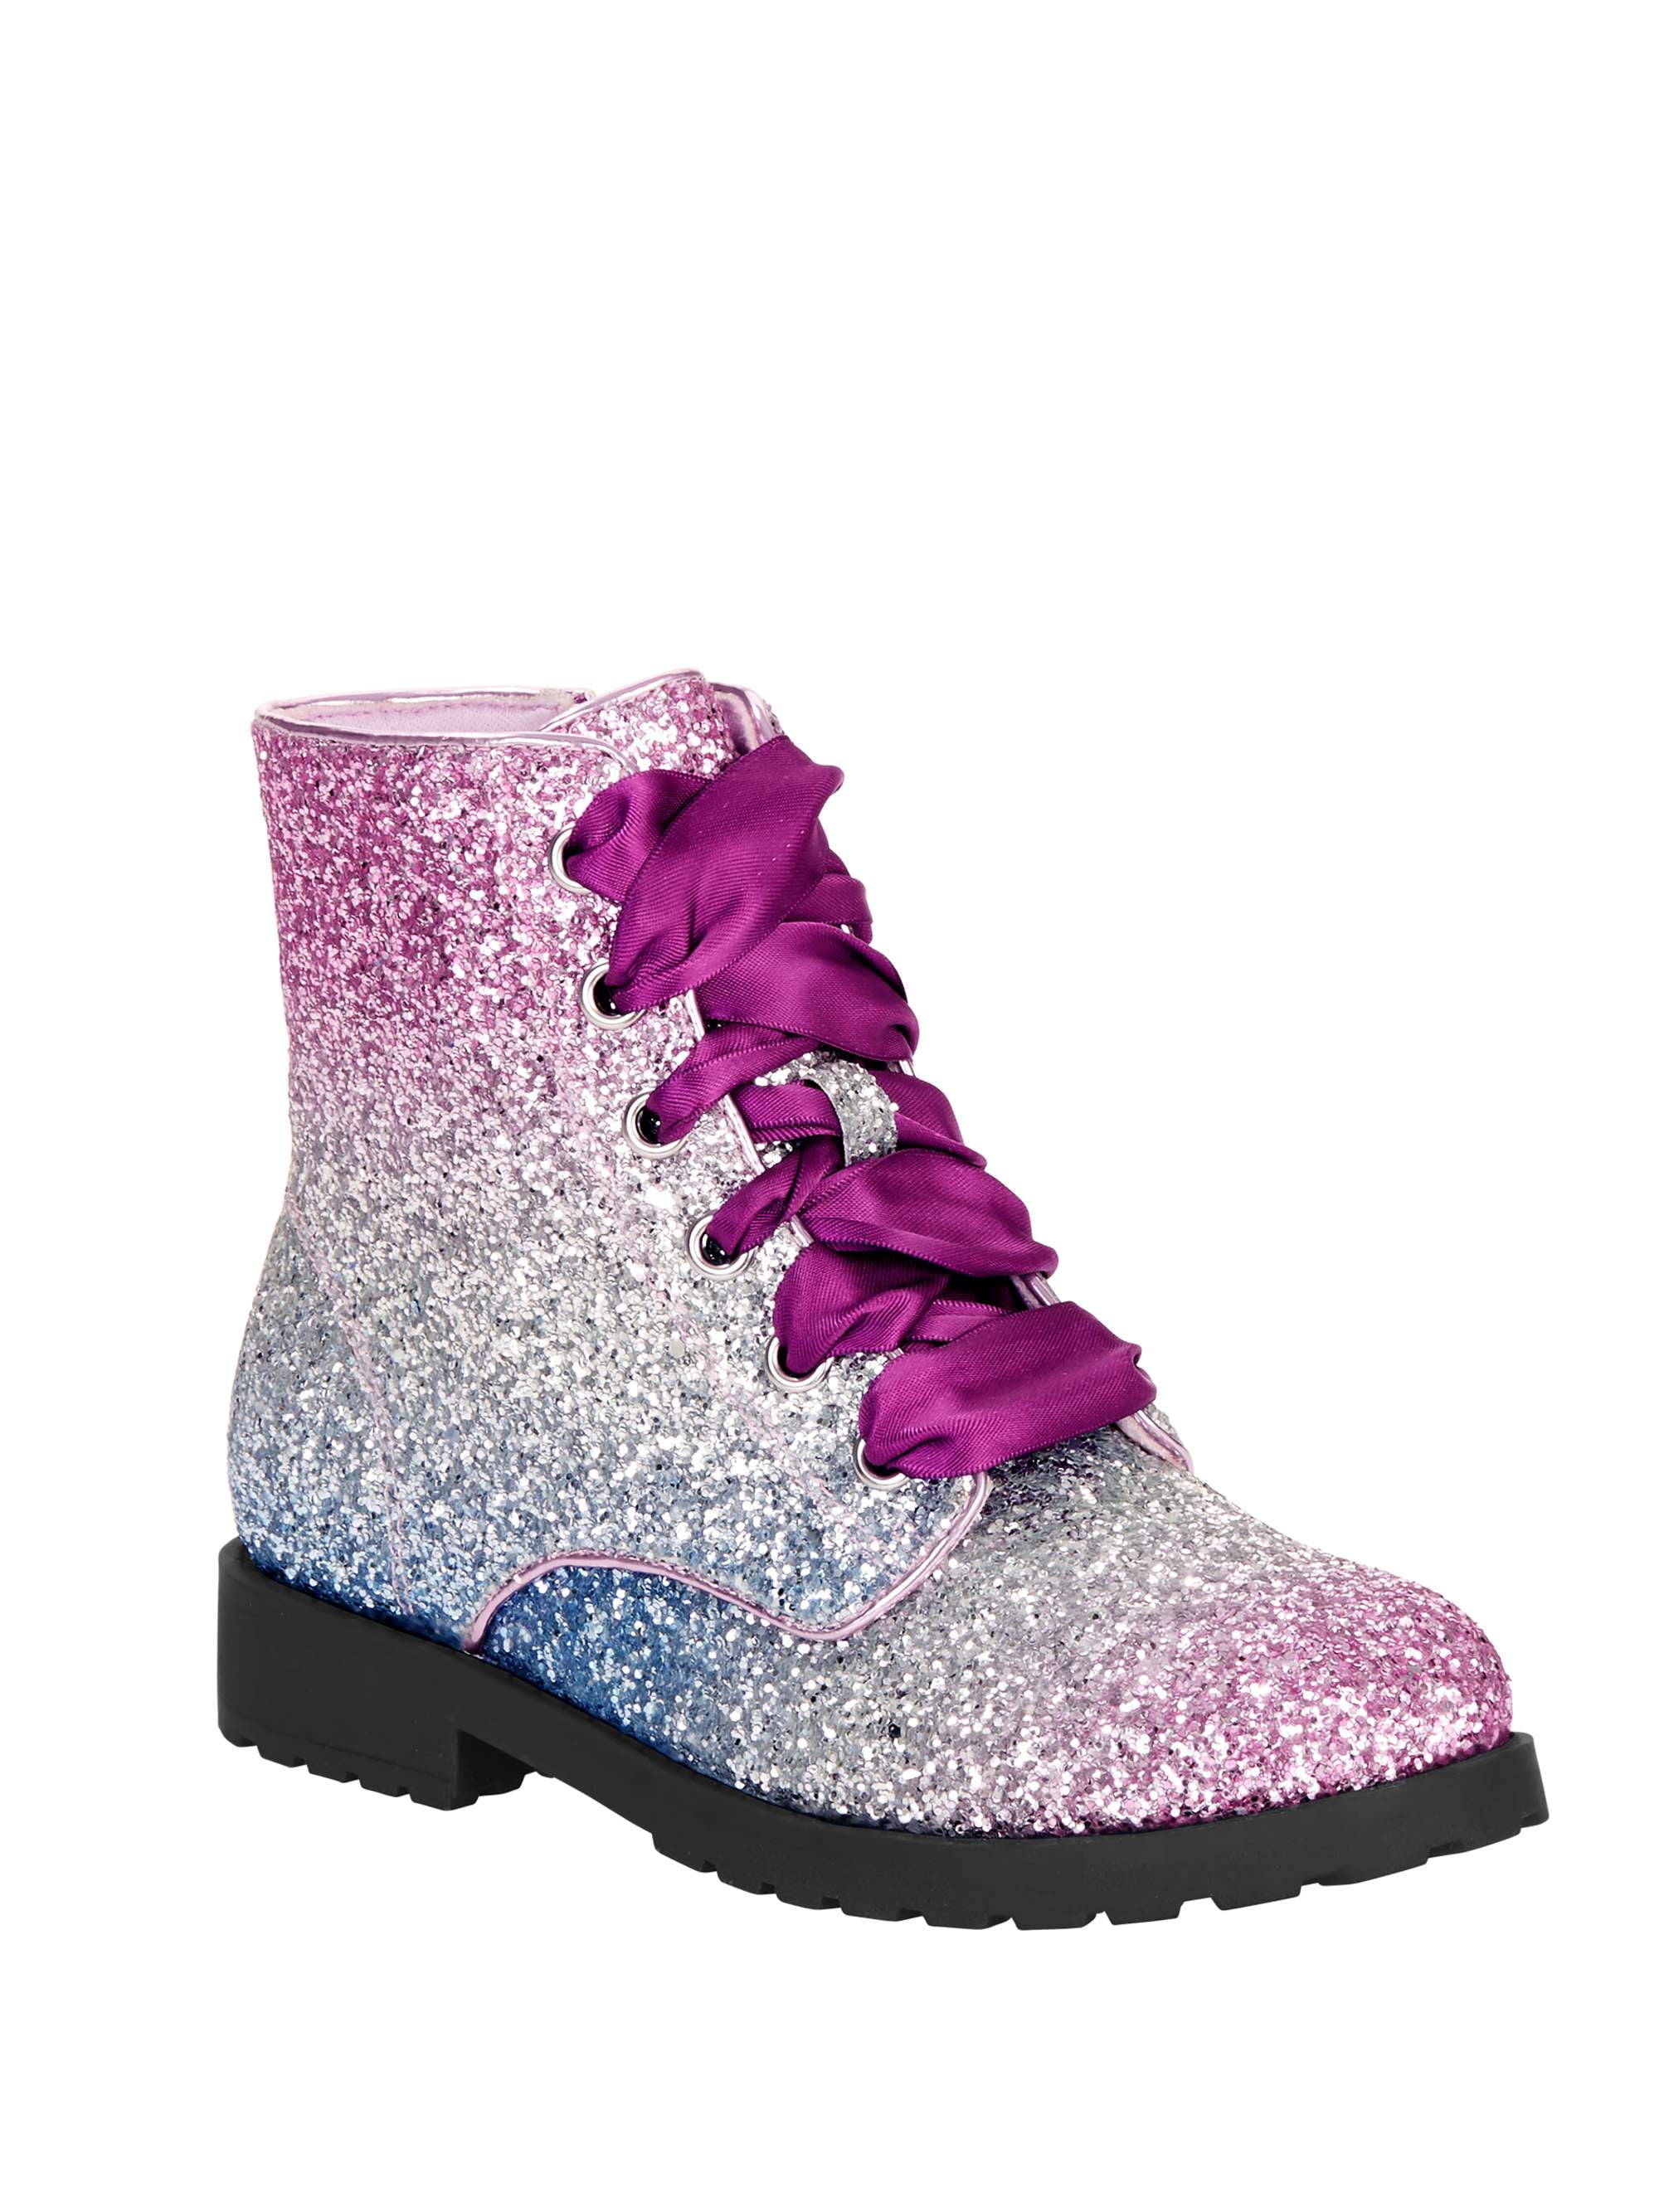 Purple Glitter Combat Boots. Girls Shoes | Little Bear and Bean Boutique, LLC BK2